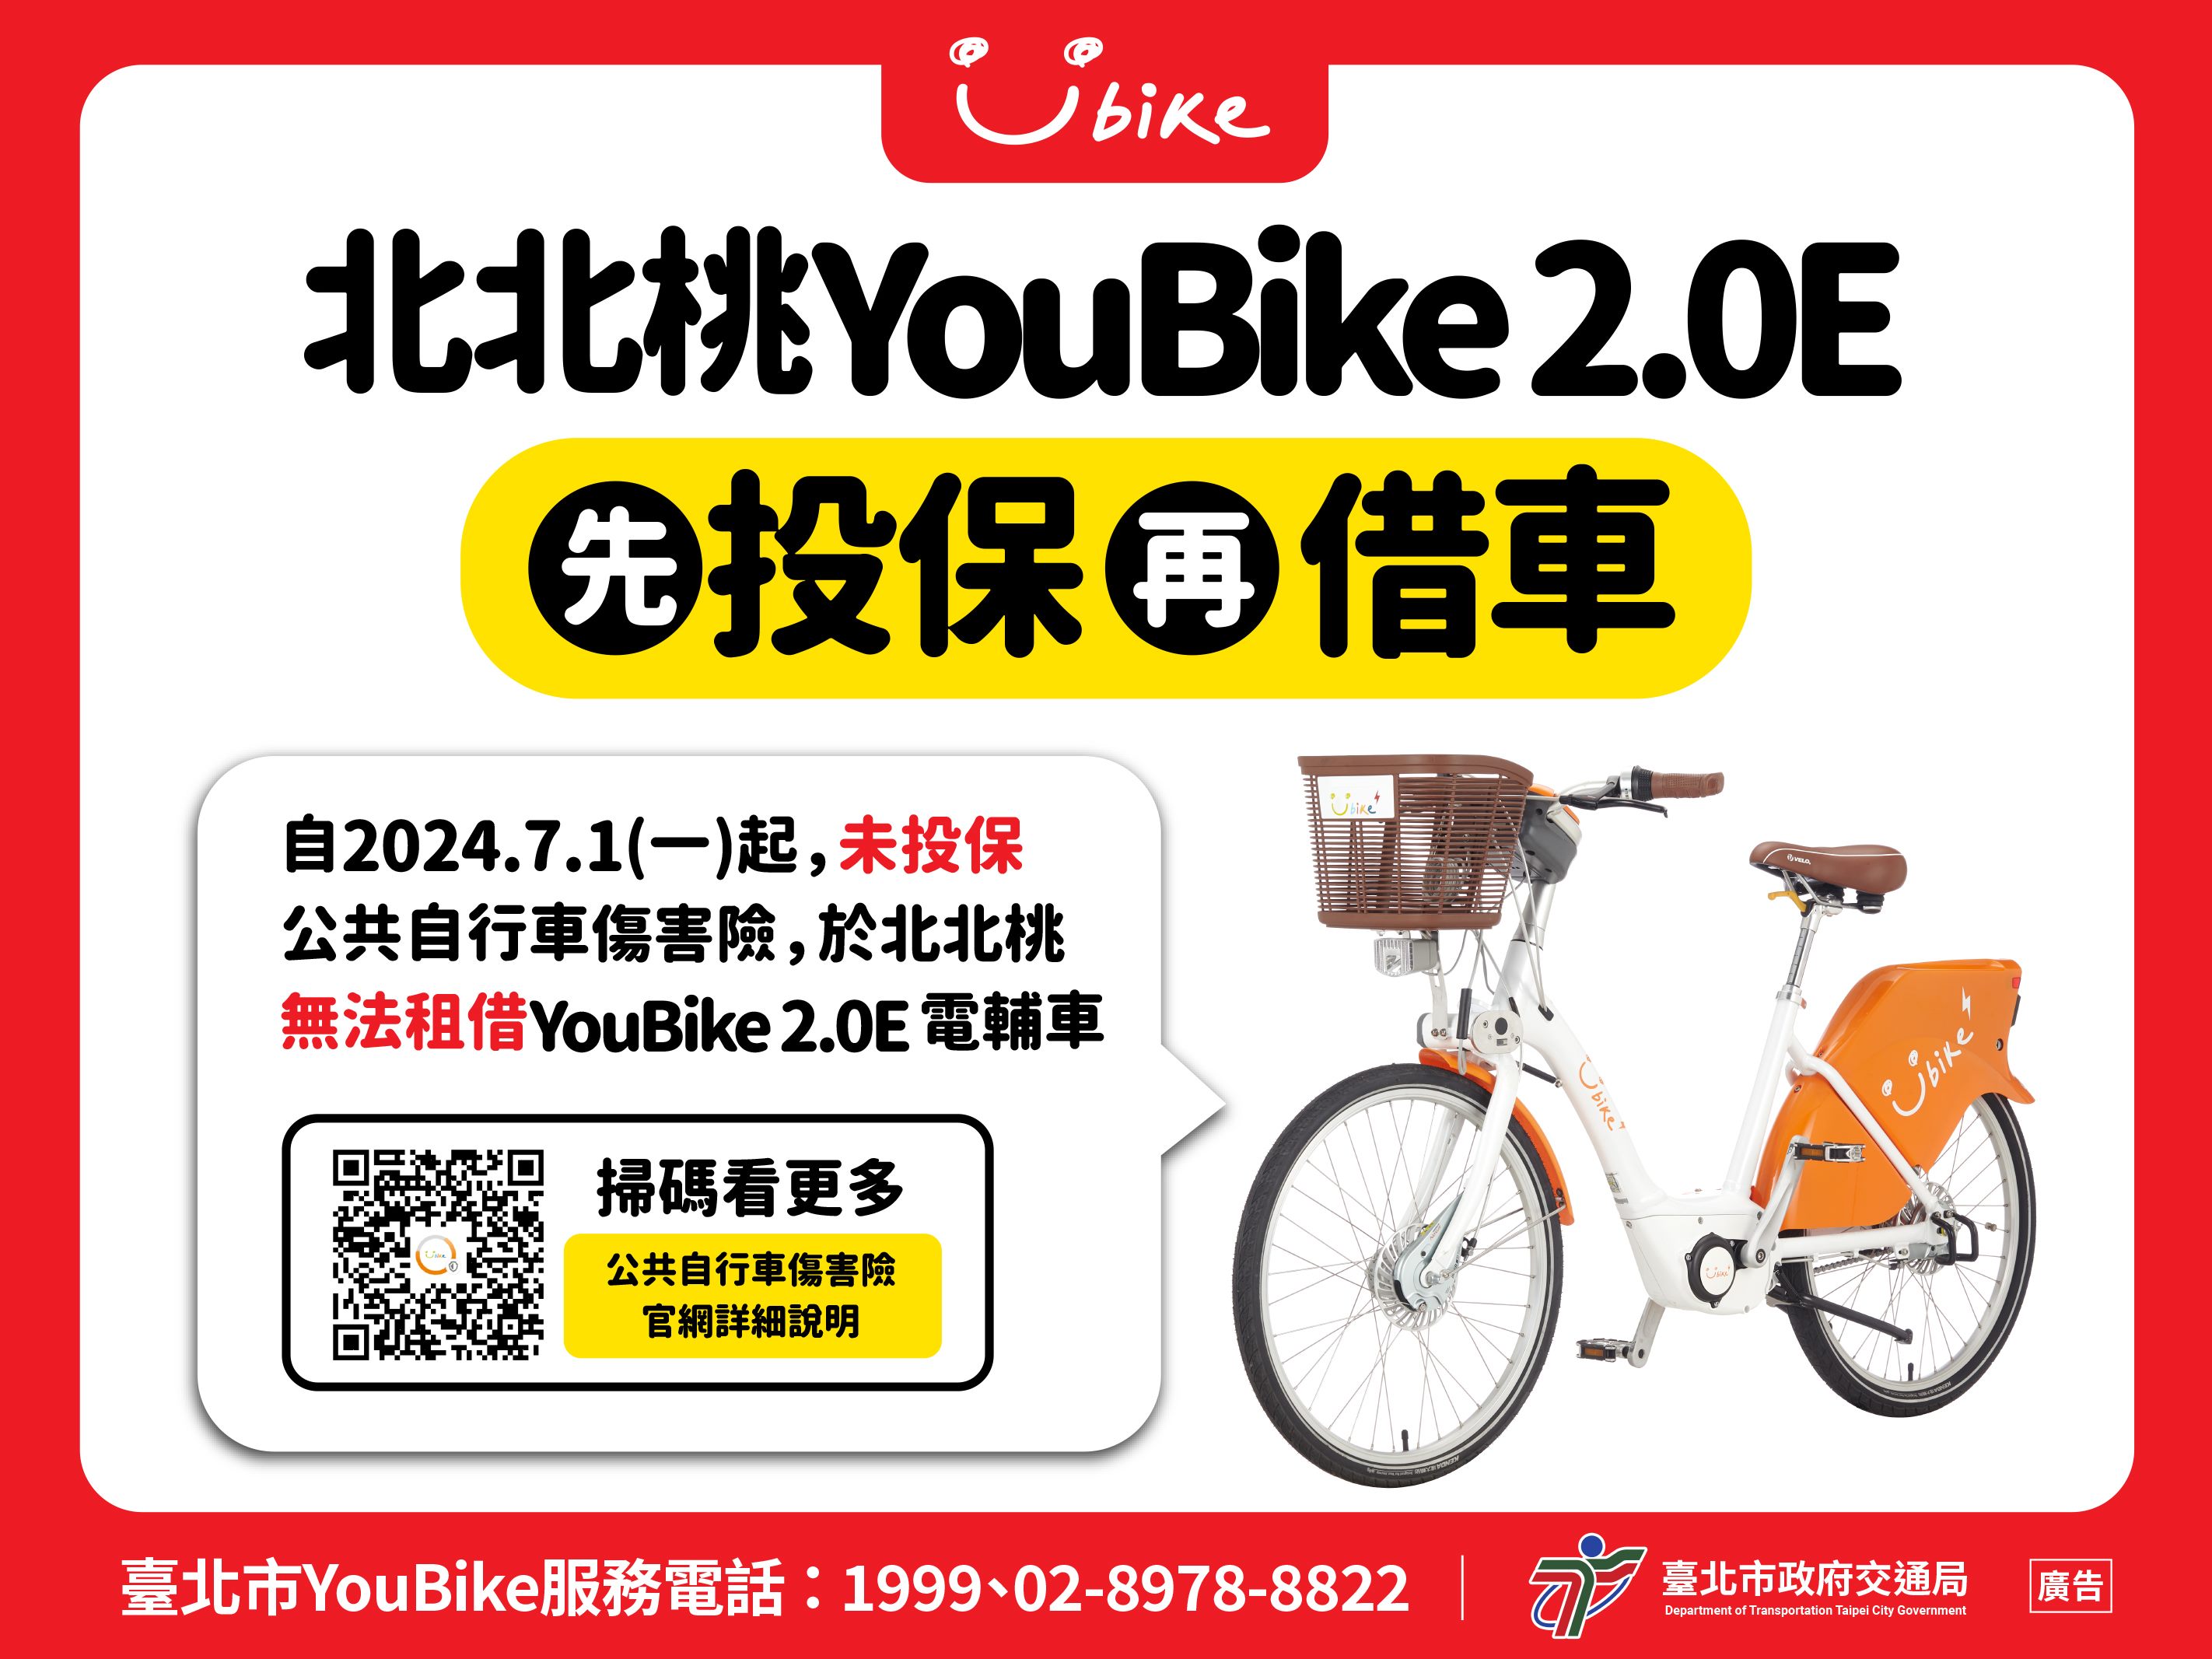 7月1日起北北桃未投保公共自行車傷害險無法租借YouBike2.0E